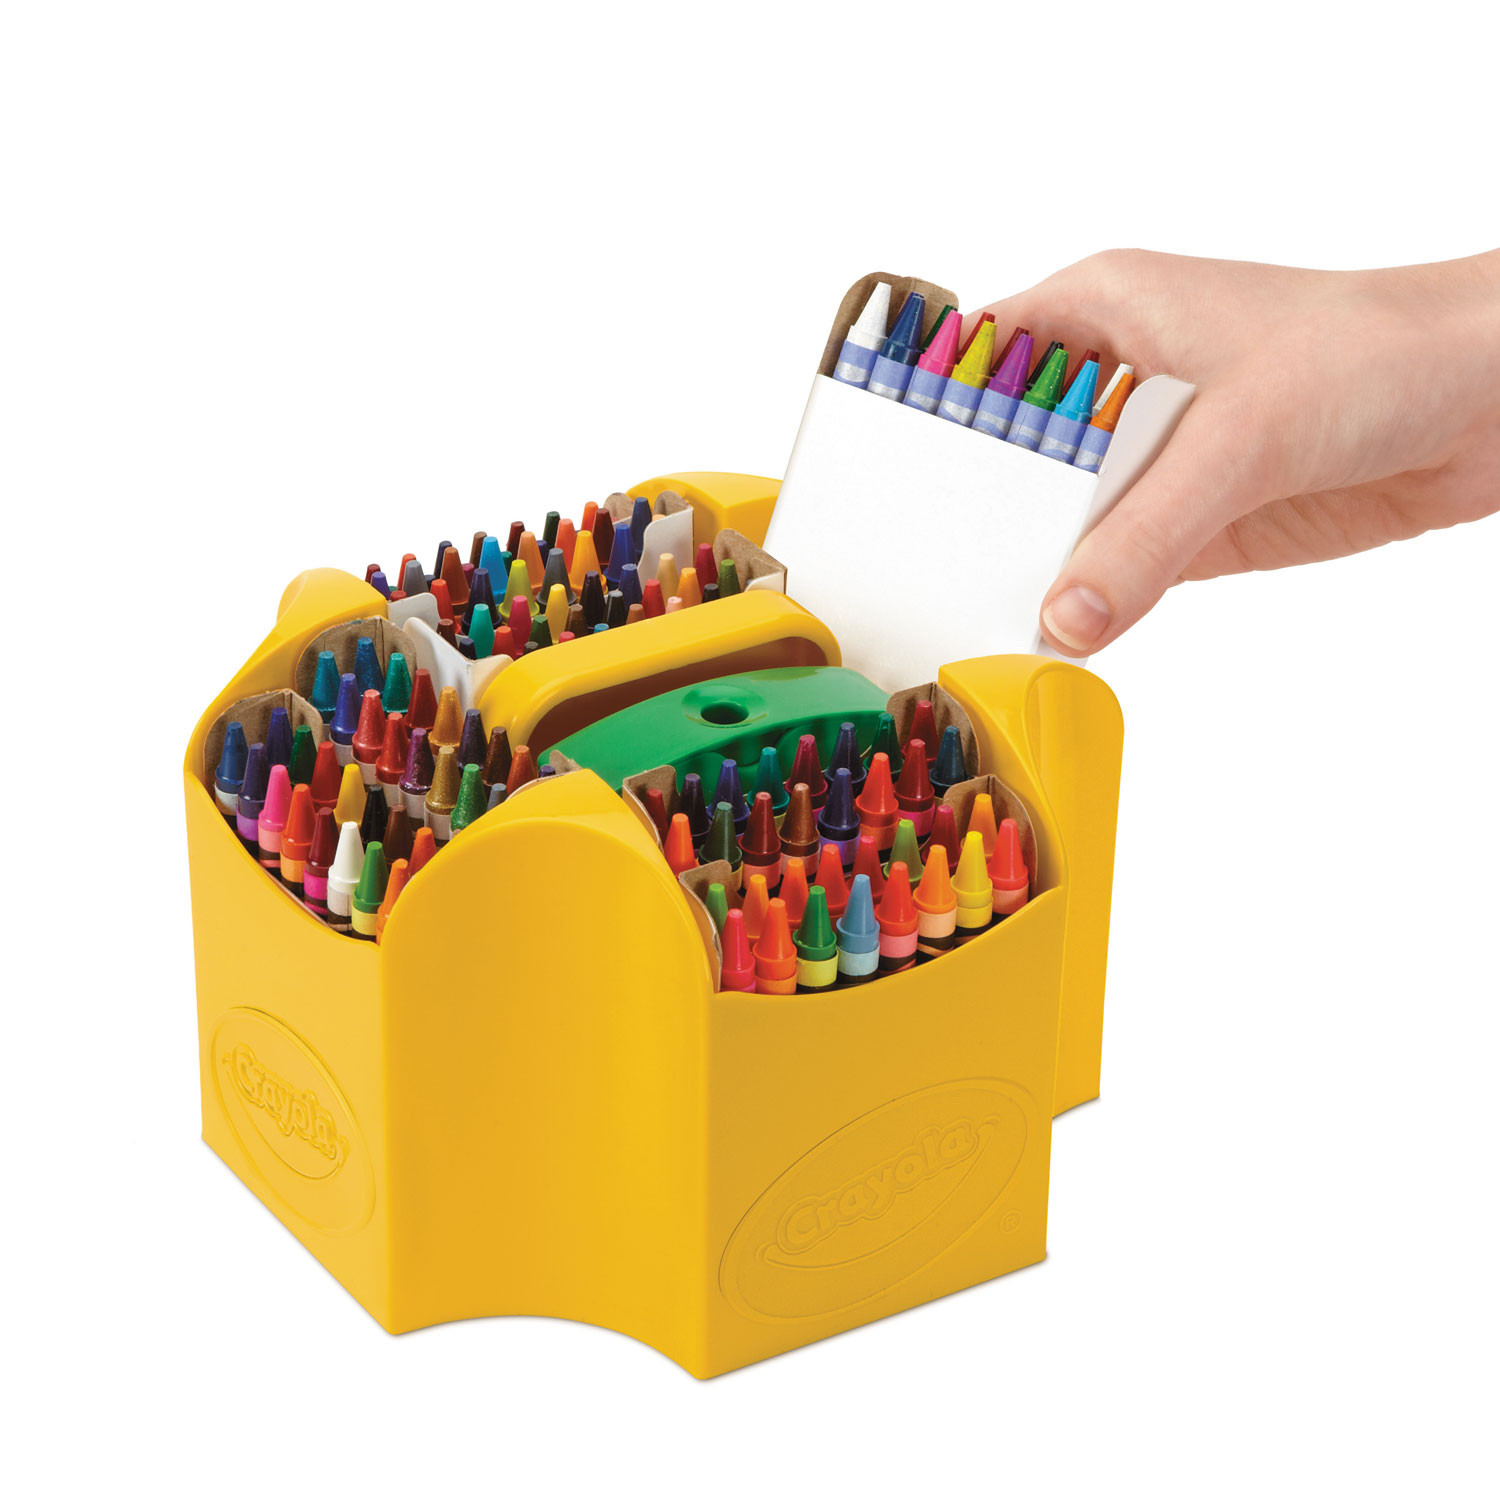 Crayola Crayons 152 Count Box